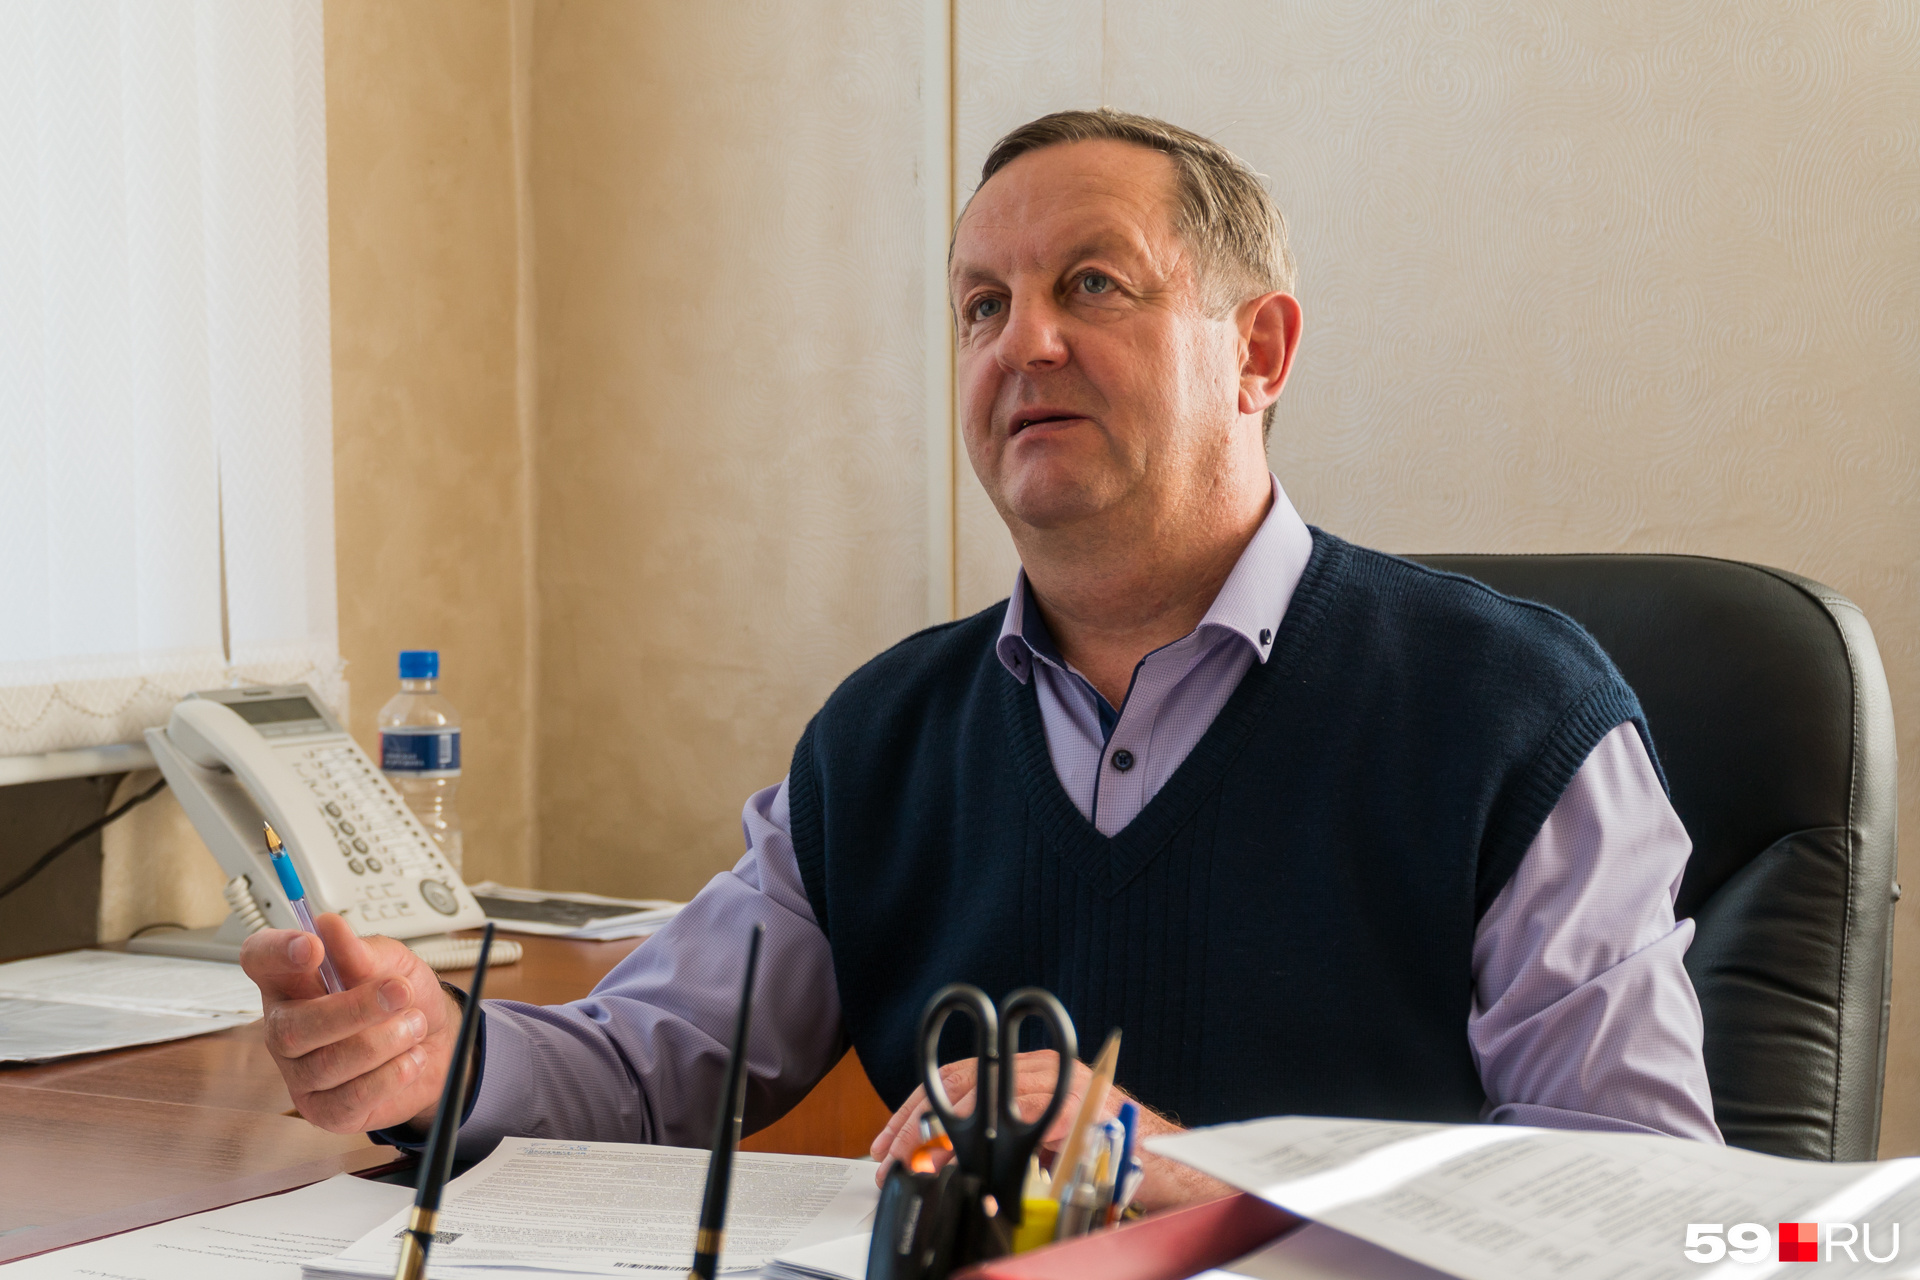 Глава Камбарки Николай Шулепов считает, что в городе нужно провести референдум или соцопрос, чтобы узнать мнение всех жителей